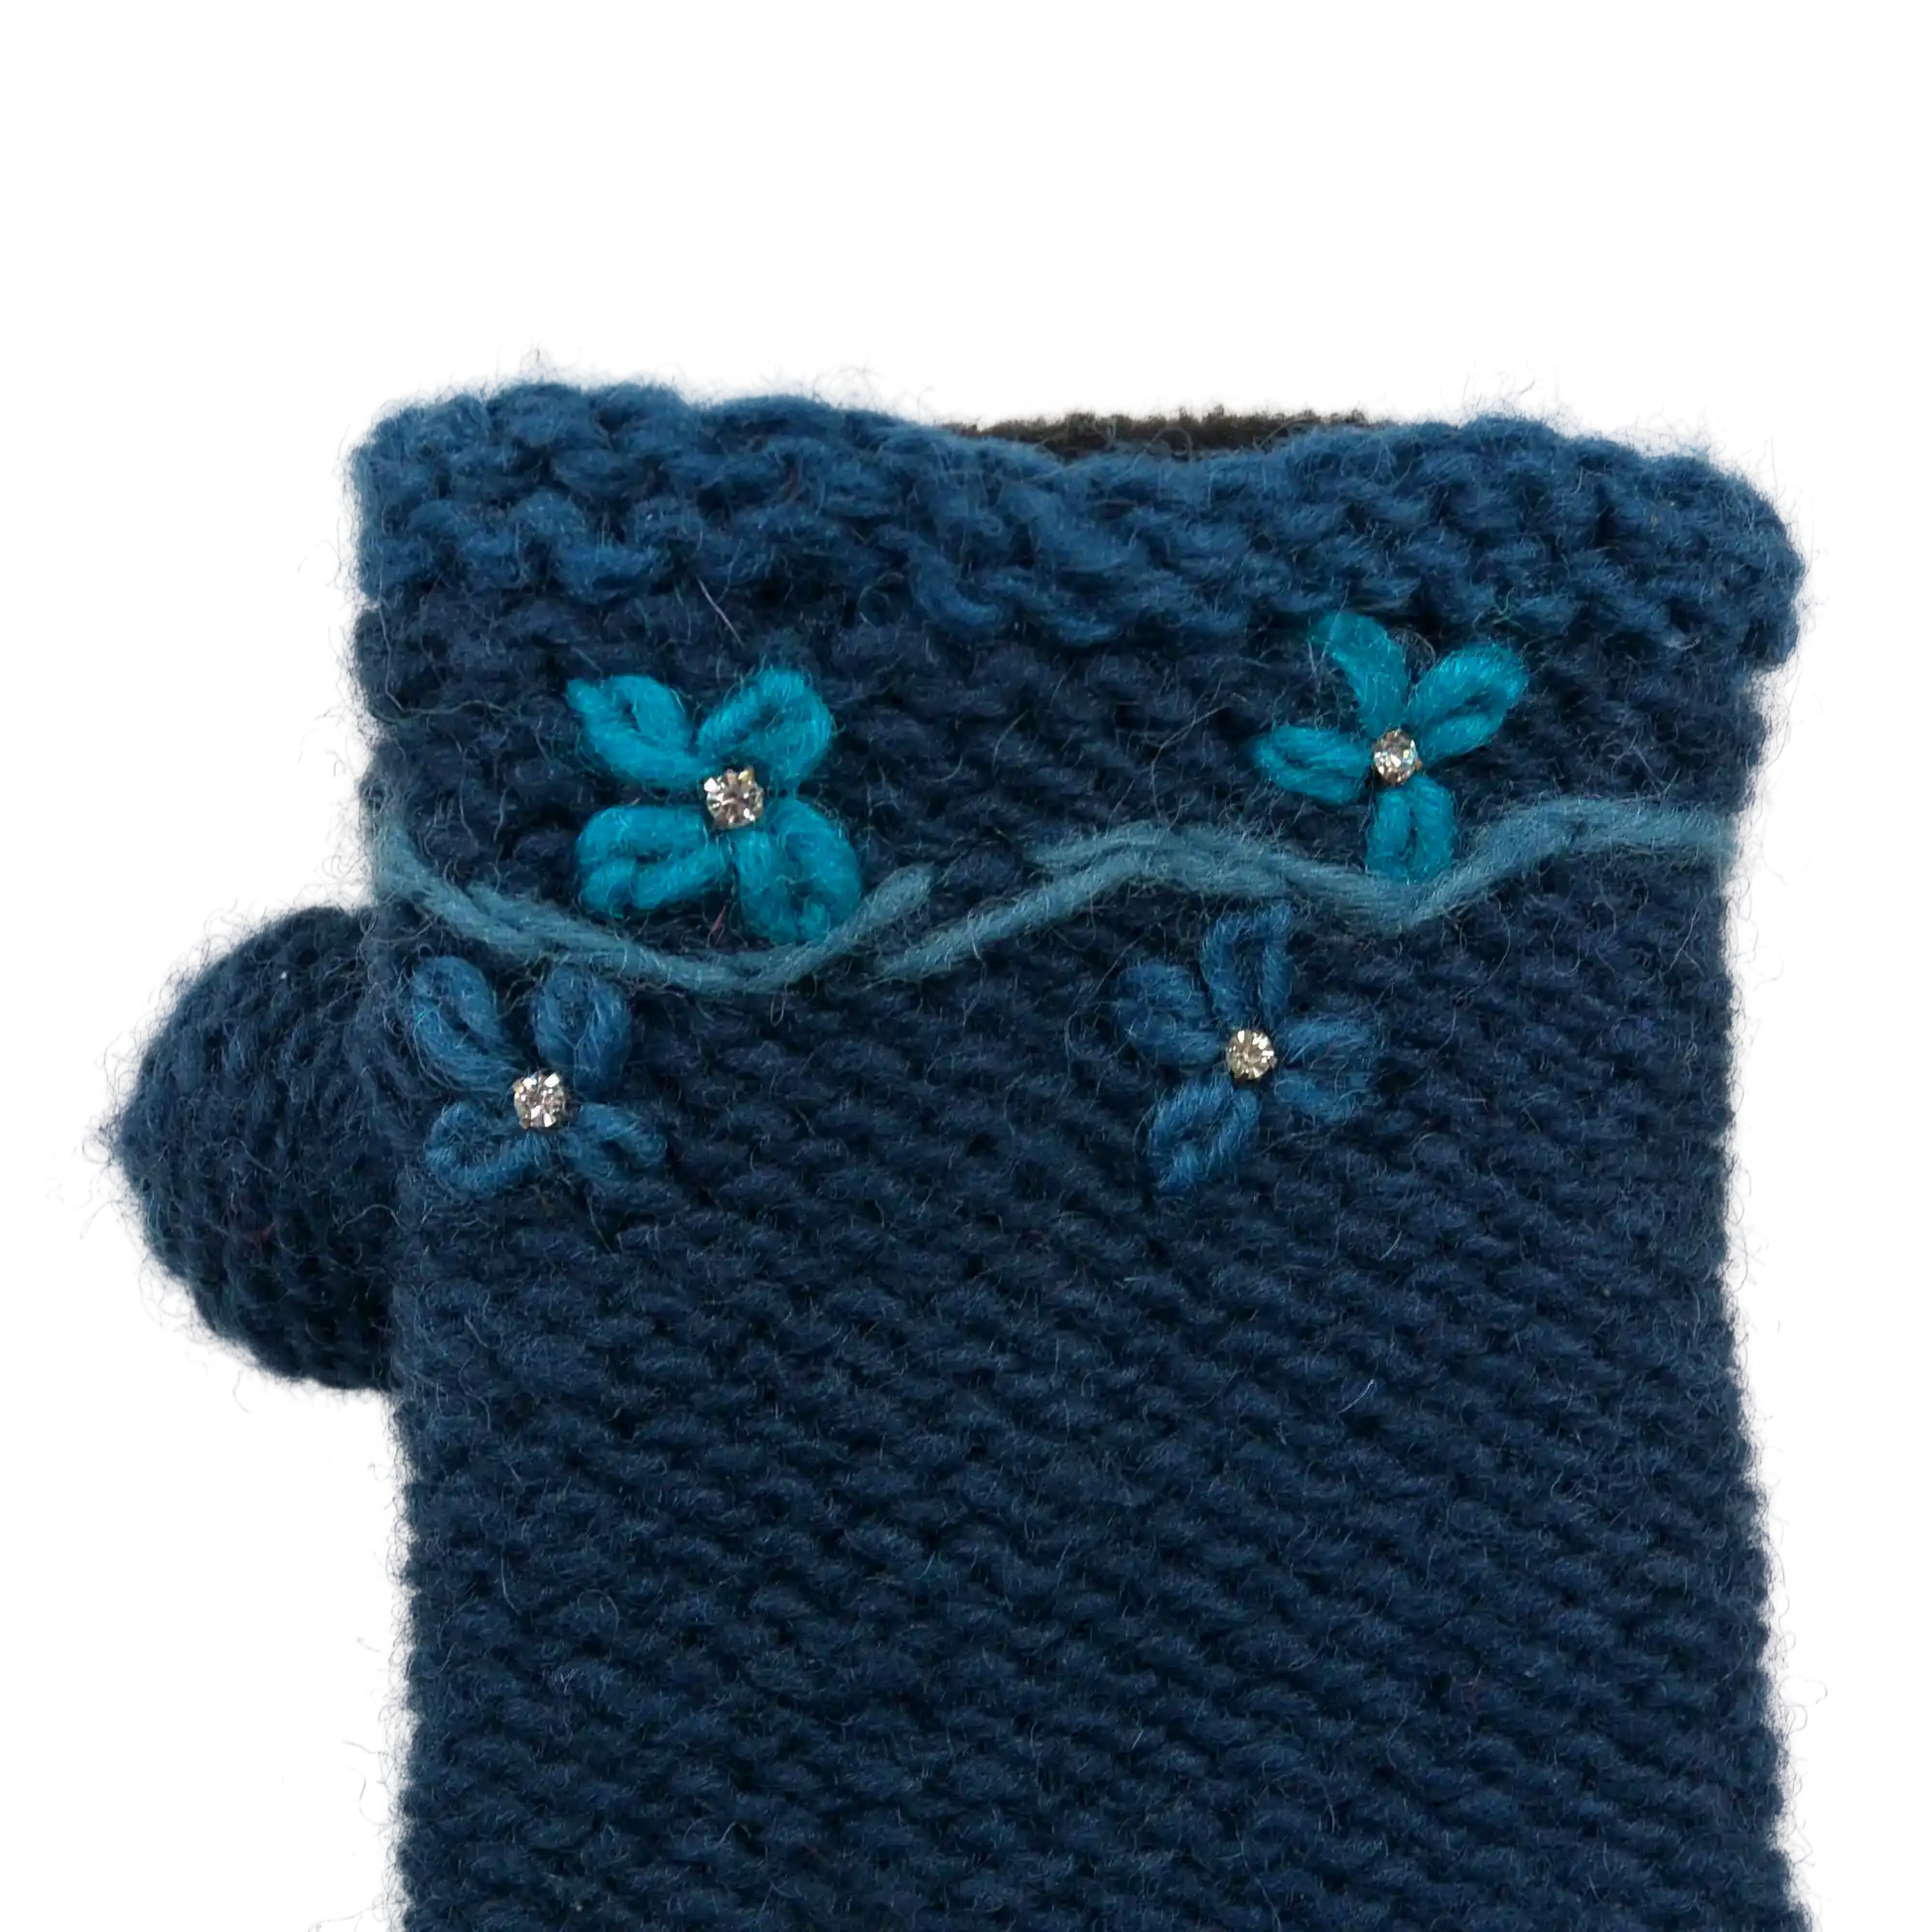 Pulswärmwe, Armstulpen Strick mit Daumen aus Wolle Marineblau bestickt mit Blume und Strasssteinchen.